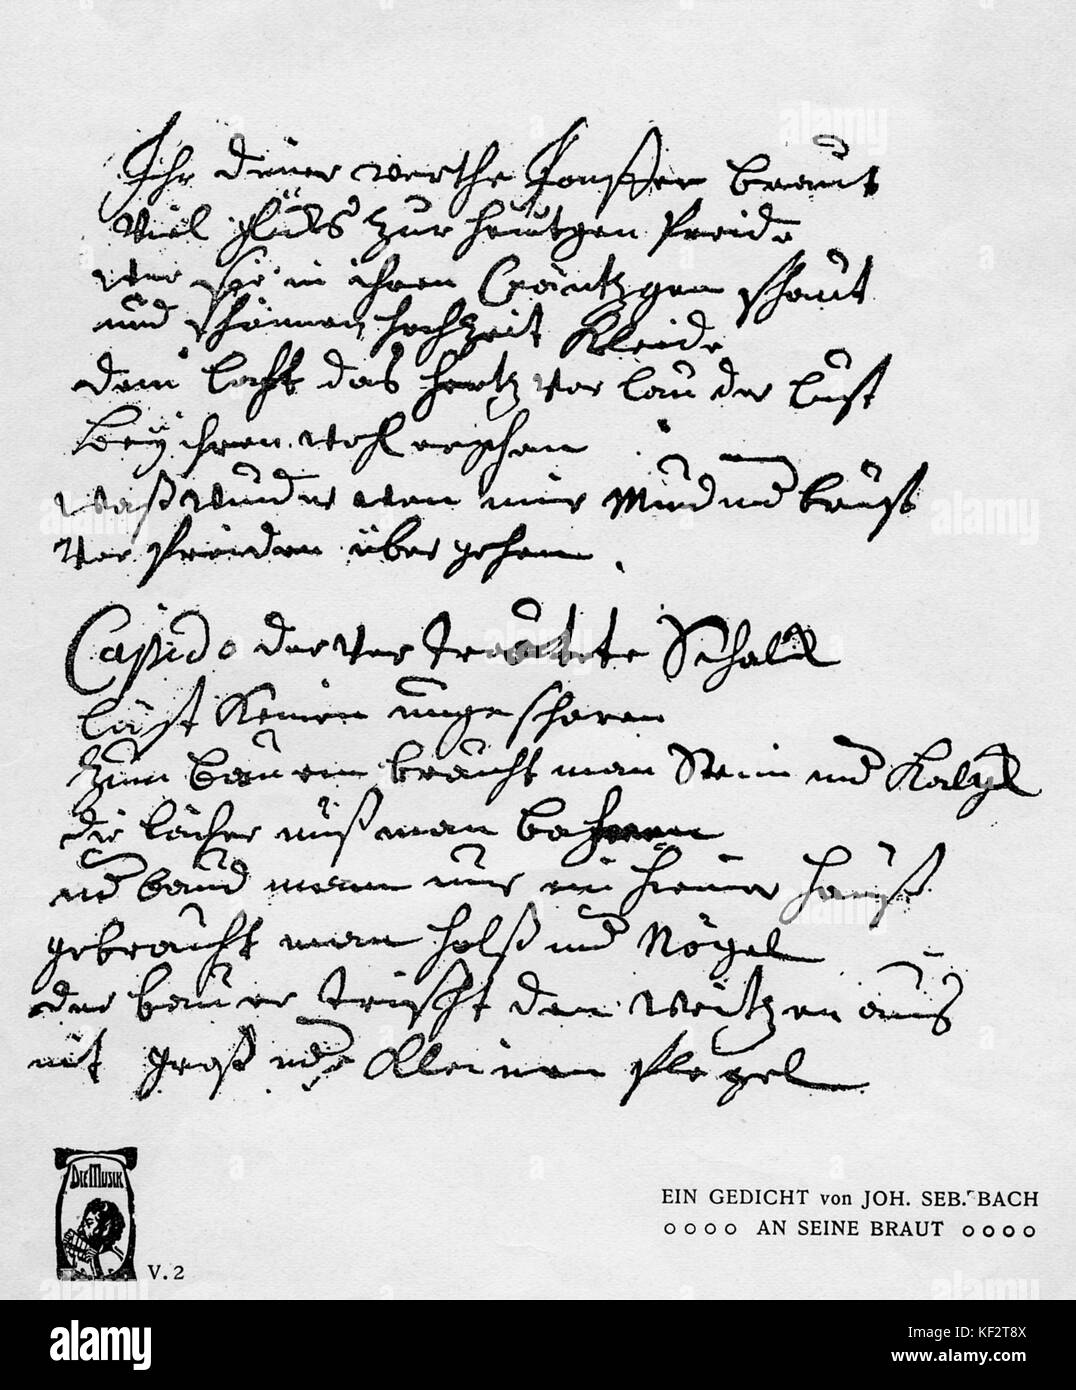 Poème manuscrit de Johann Sebastian Bach à son épouse. Compositeur allemand et organiste, 21 mars 1685 - 28 juillet 1750 Banque D'Images